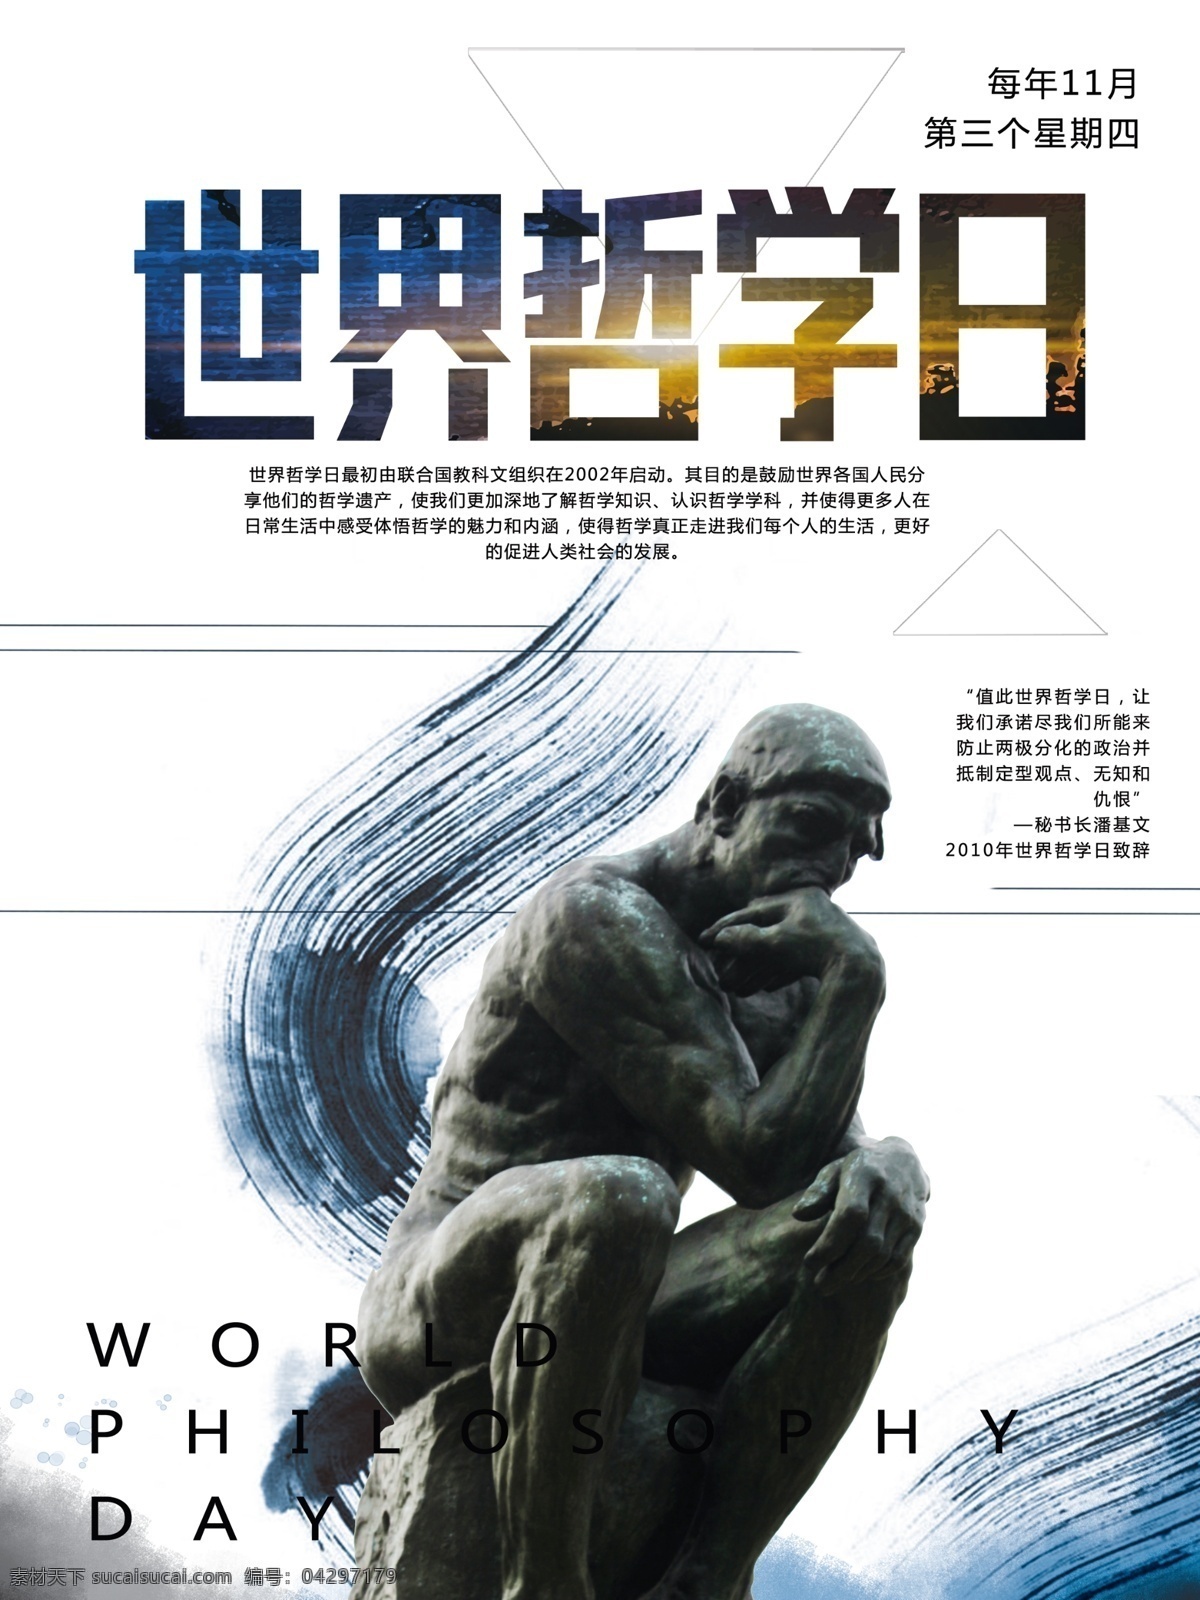 简约 世界 哲学 日 宣传海报 笔刷 哲学家塑像 雕像 思索者